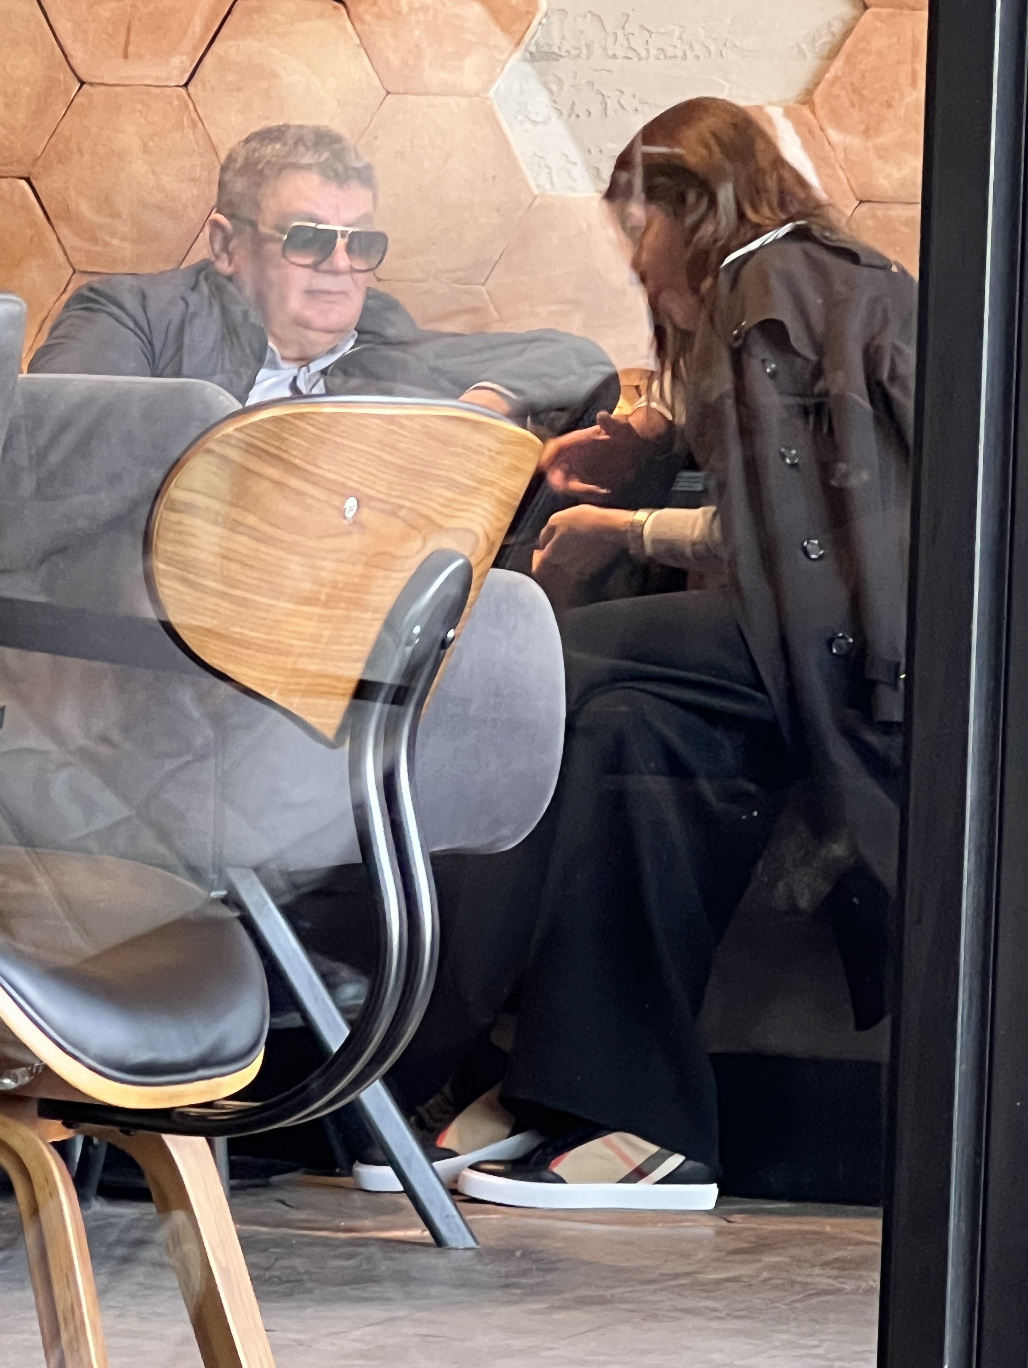 Di si lipa? Na kavi! Pogledajte Josipu Rimac i Milenka Bašića u kafiću. Oboje su pali u istoj aferi